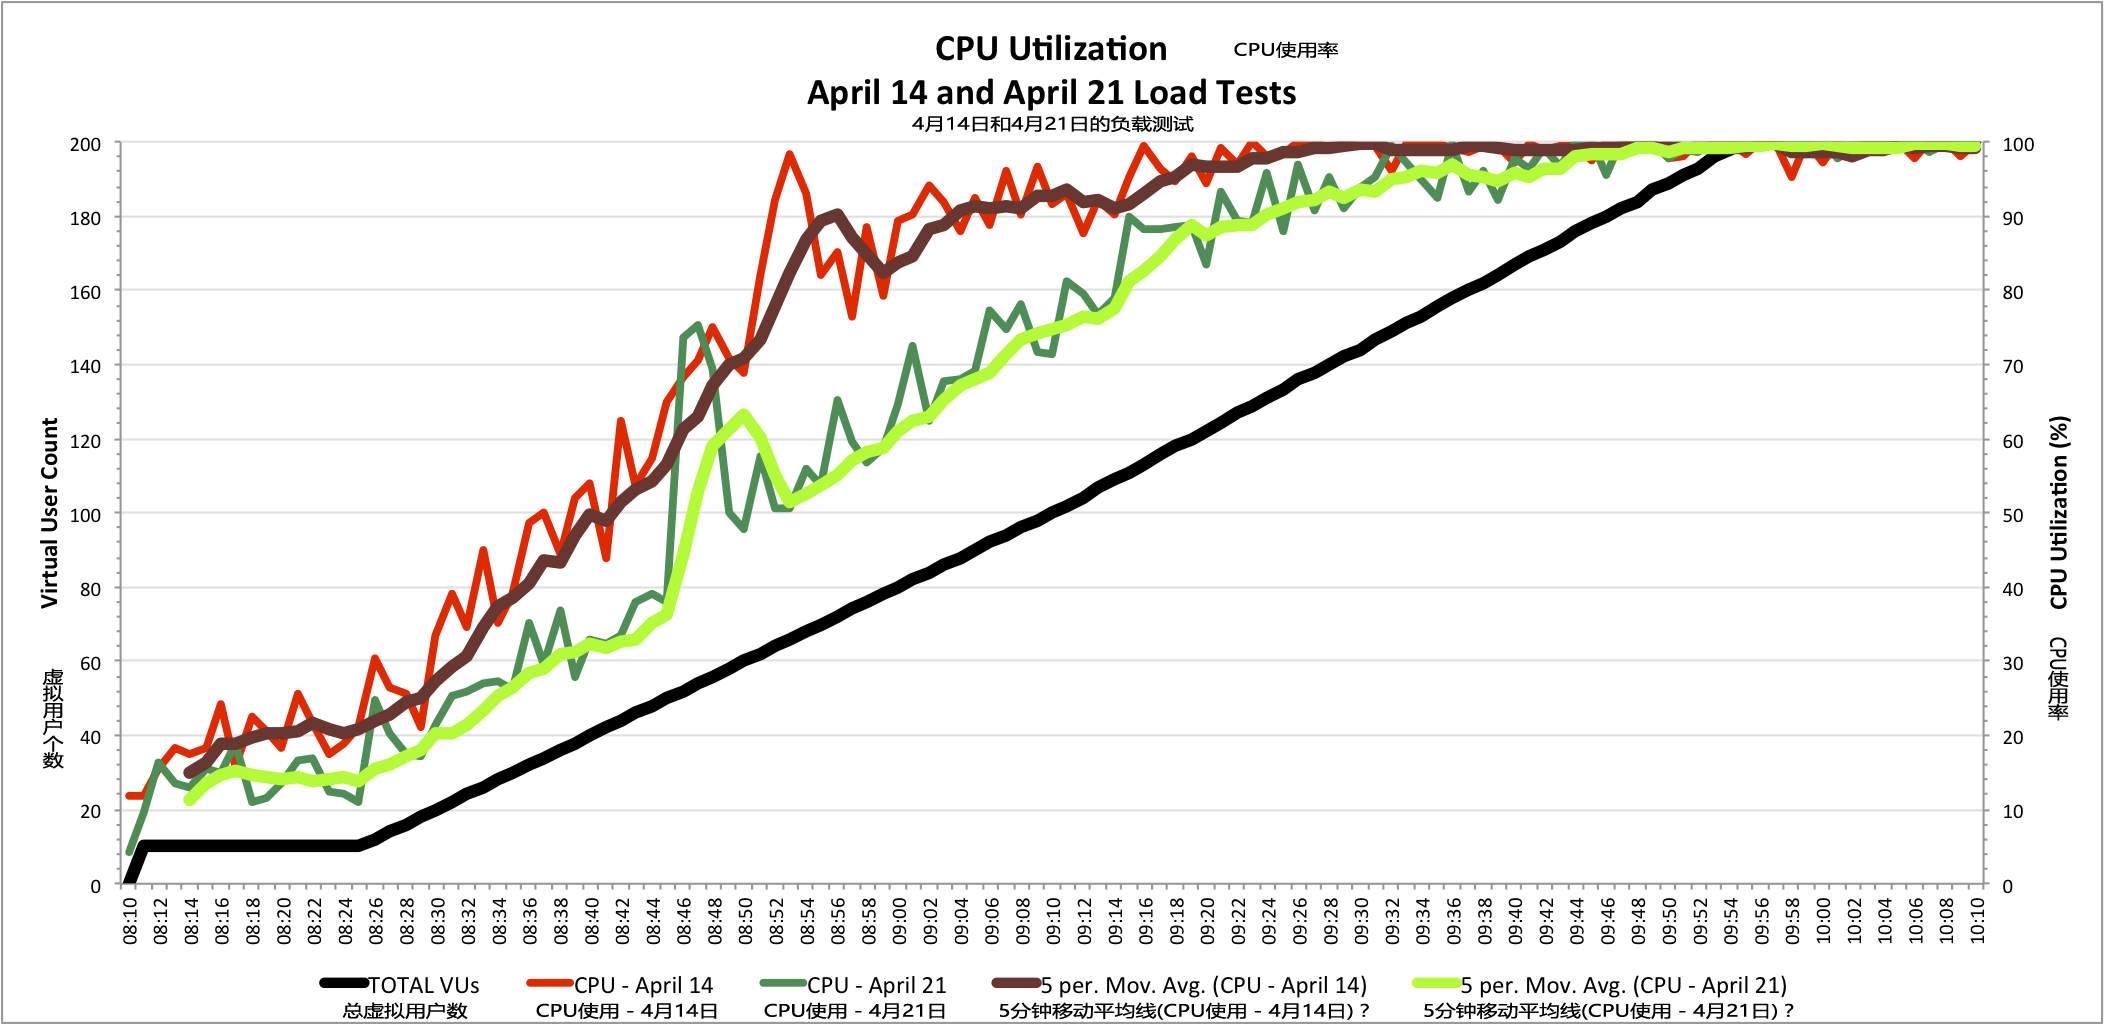 CPU使用率对比表明在4月21日的APM社区网站负载测试的提升 - 09:40之前的更低的CPU使用率